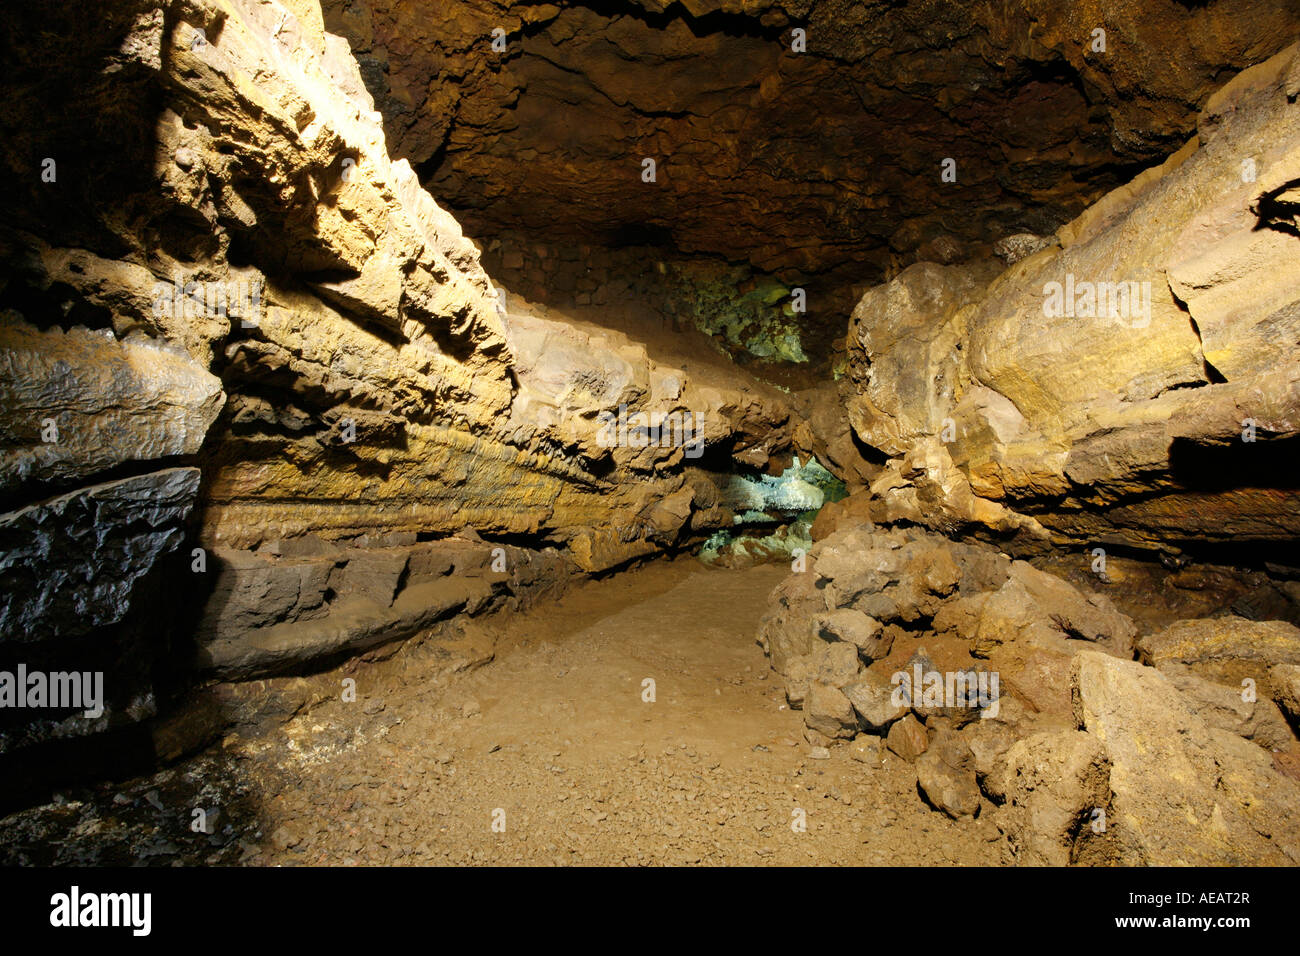 Gruta do Carvao grotte de lave. L'île de São Miguel, Açores, Portugal. Banque D'Images